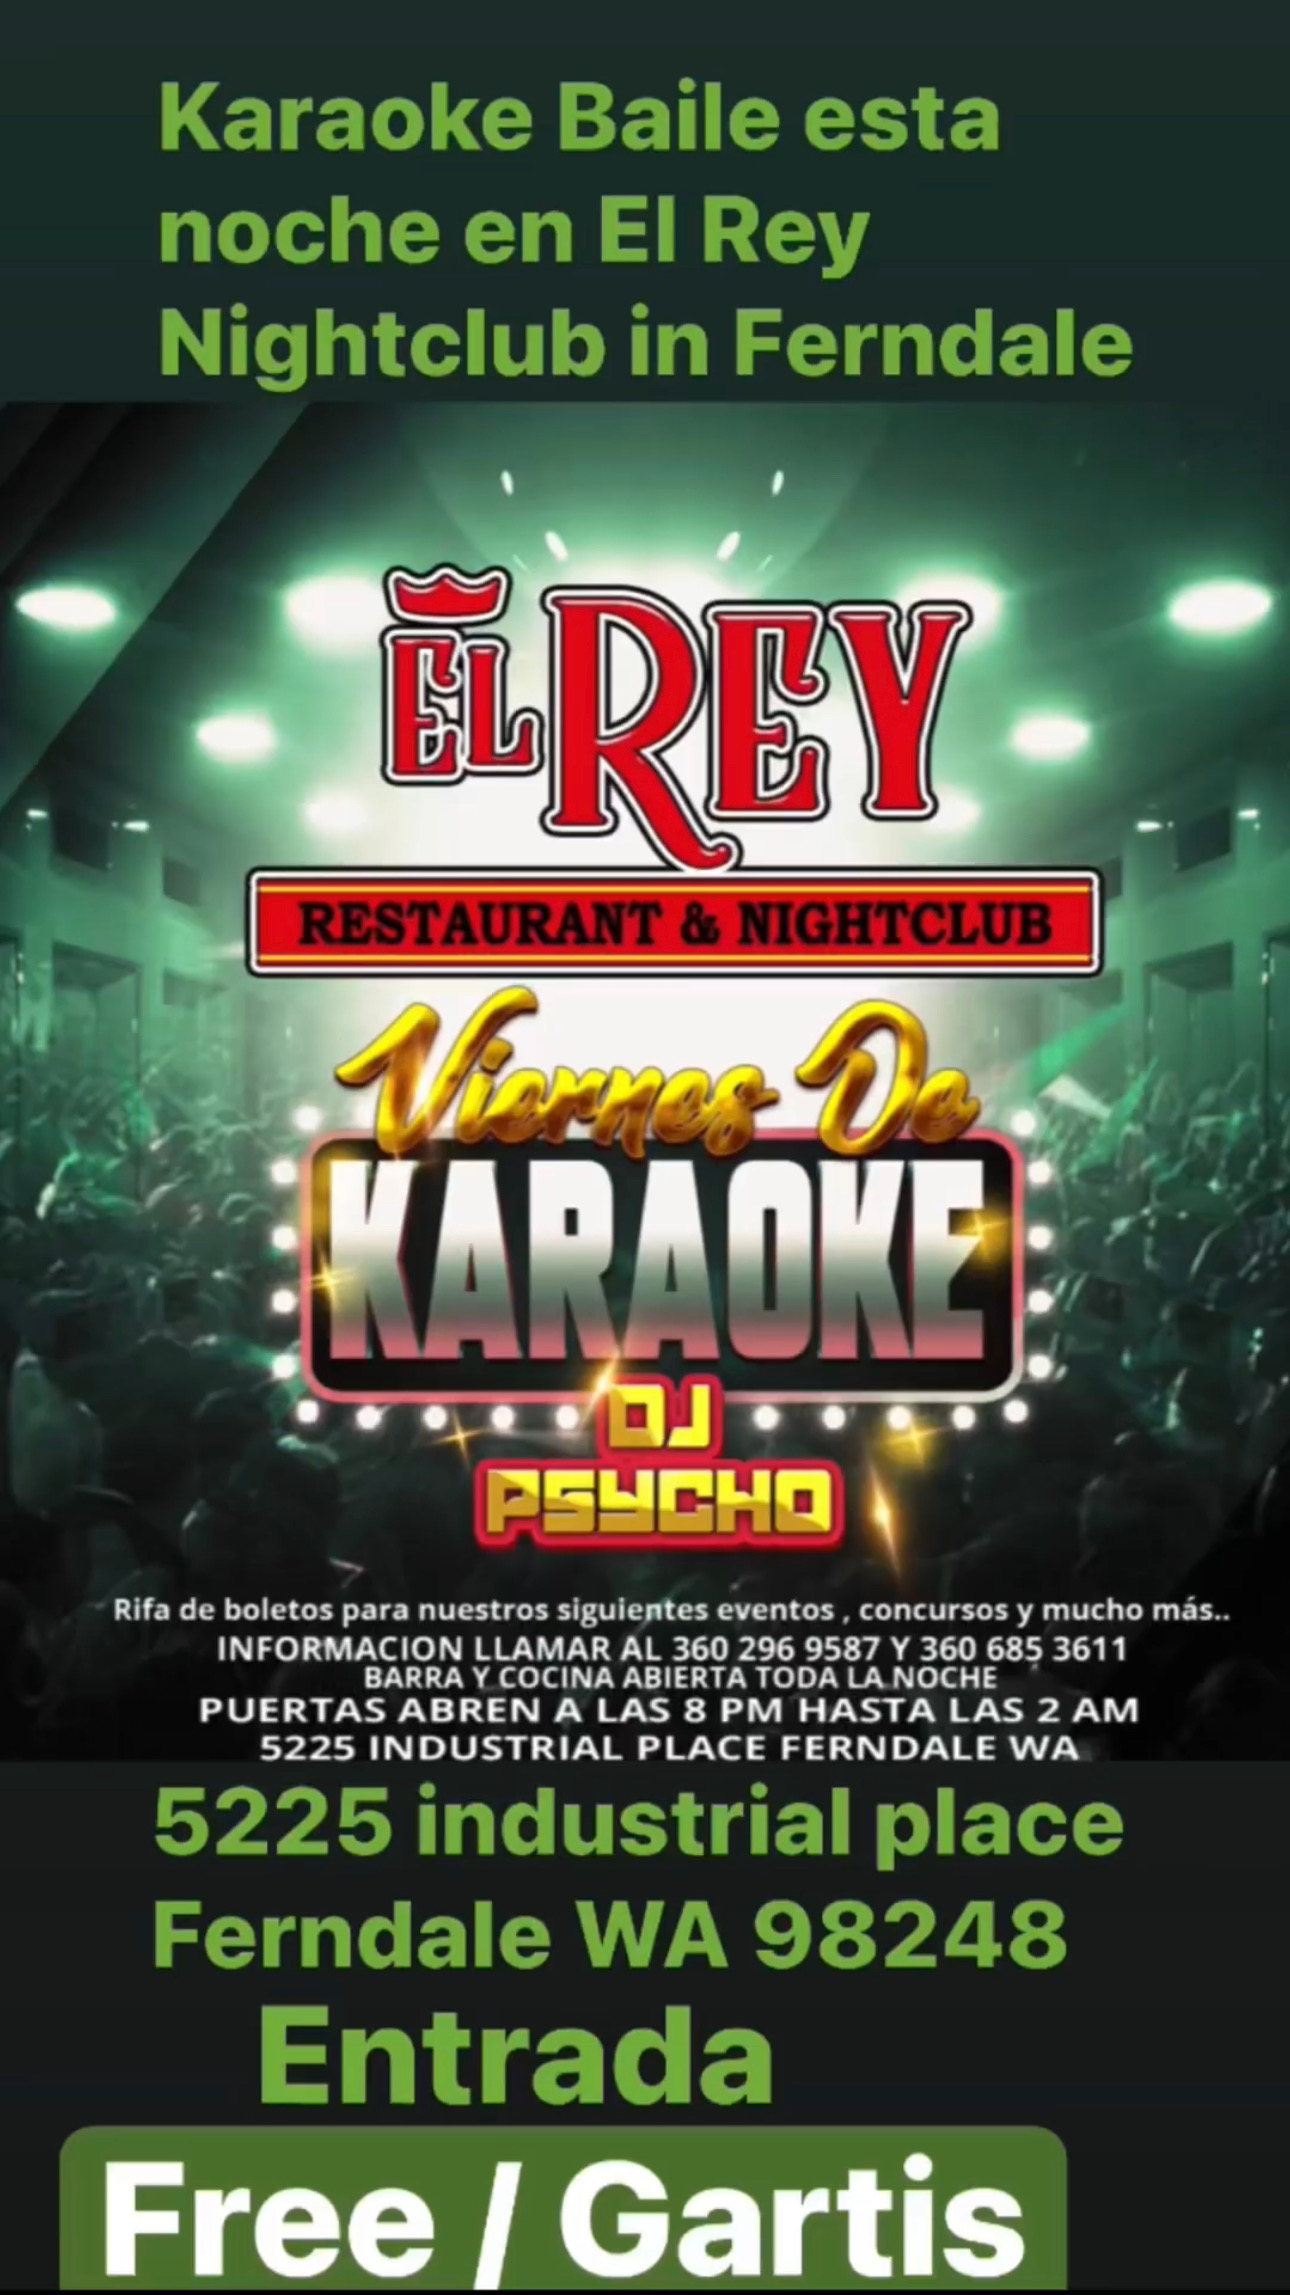 El Rey Night Club is at El Rey Night Club., By El Rey Night Club